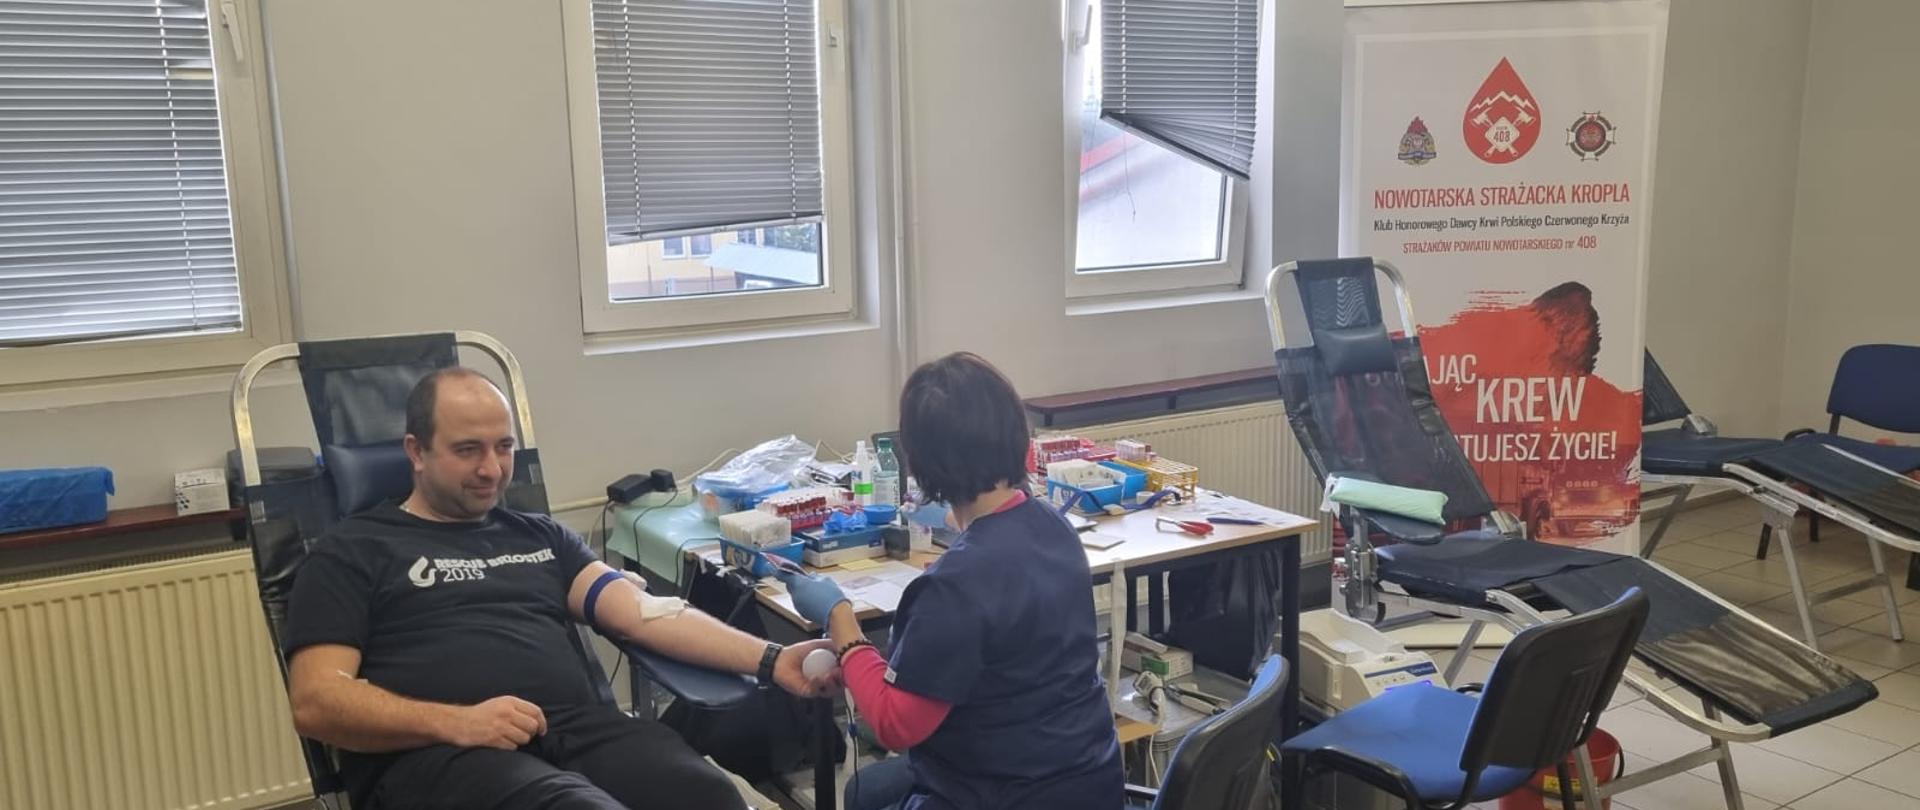 Akcja krwiodawstwa w JRG Nowy Targ